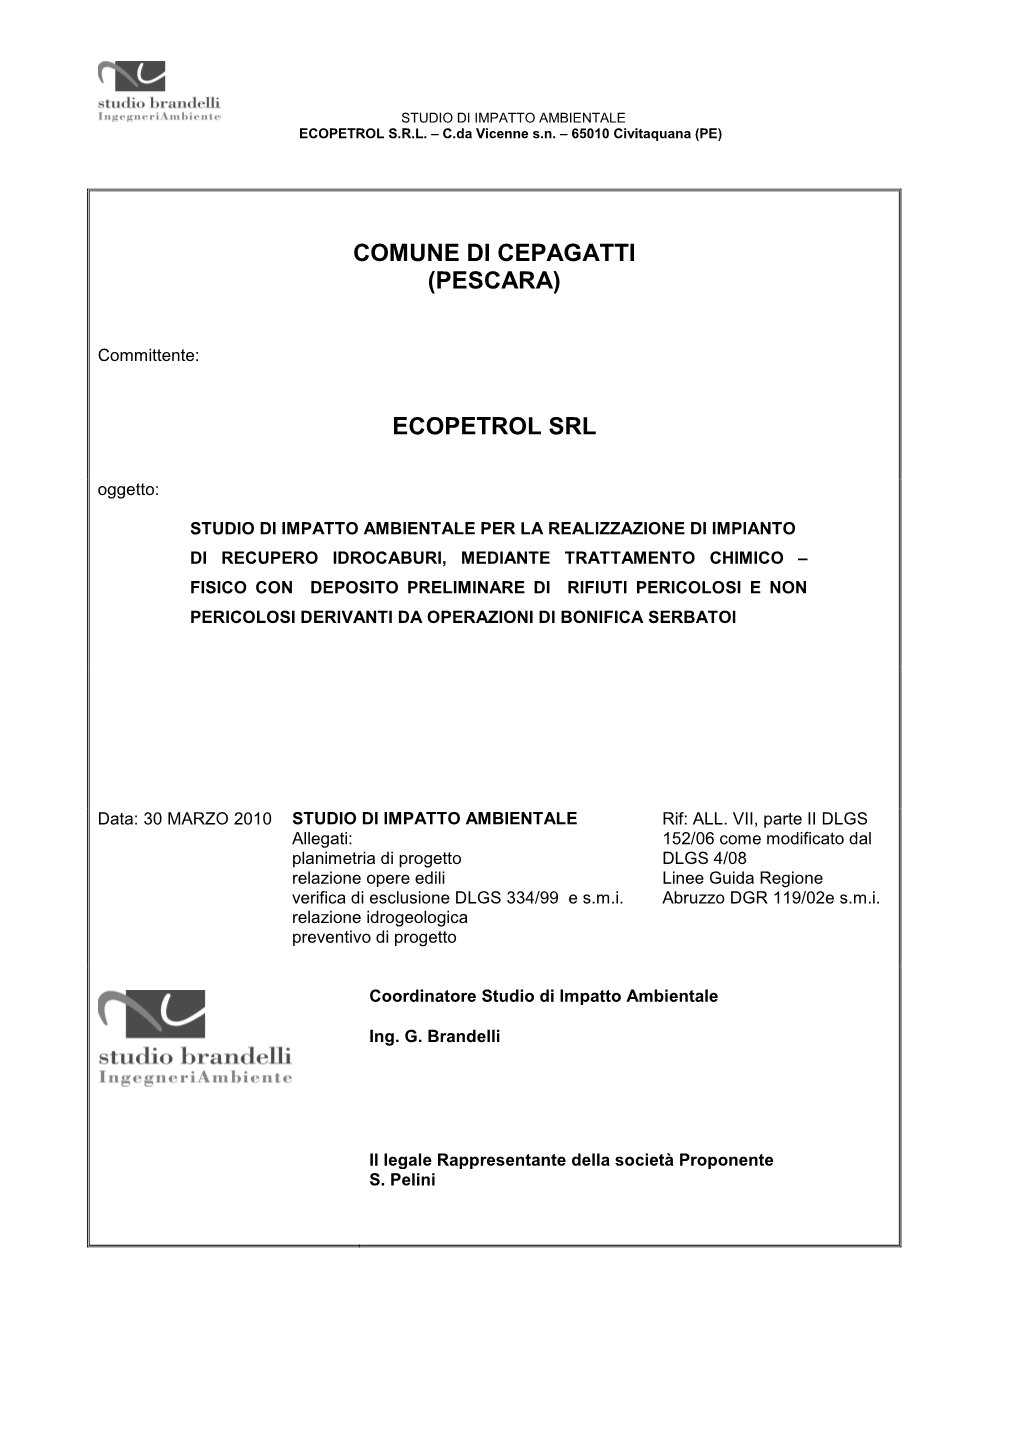 Comune Di Cepagatti (Pescara) Ecopetrol